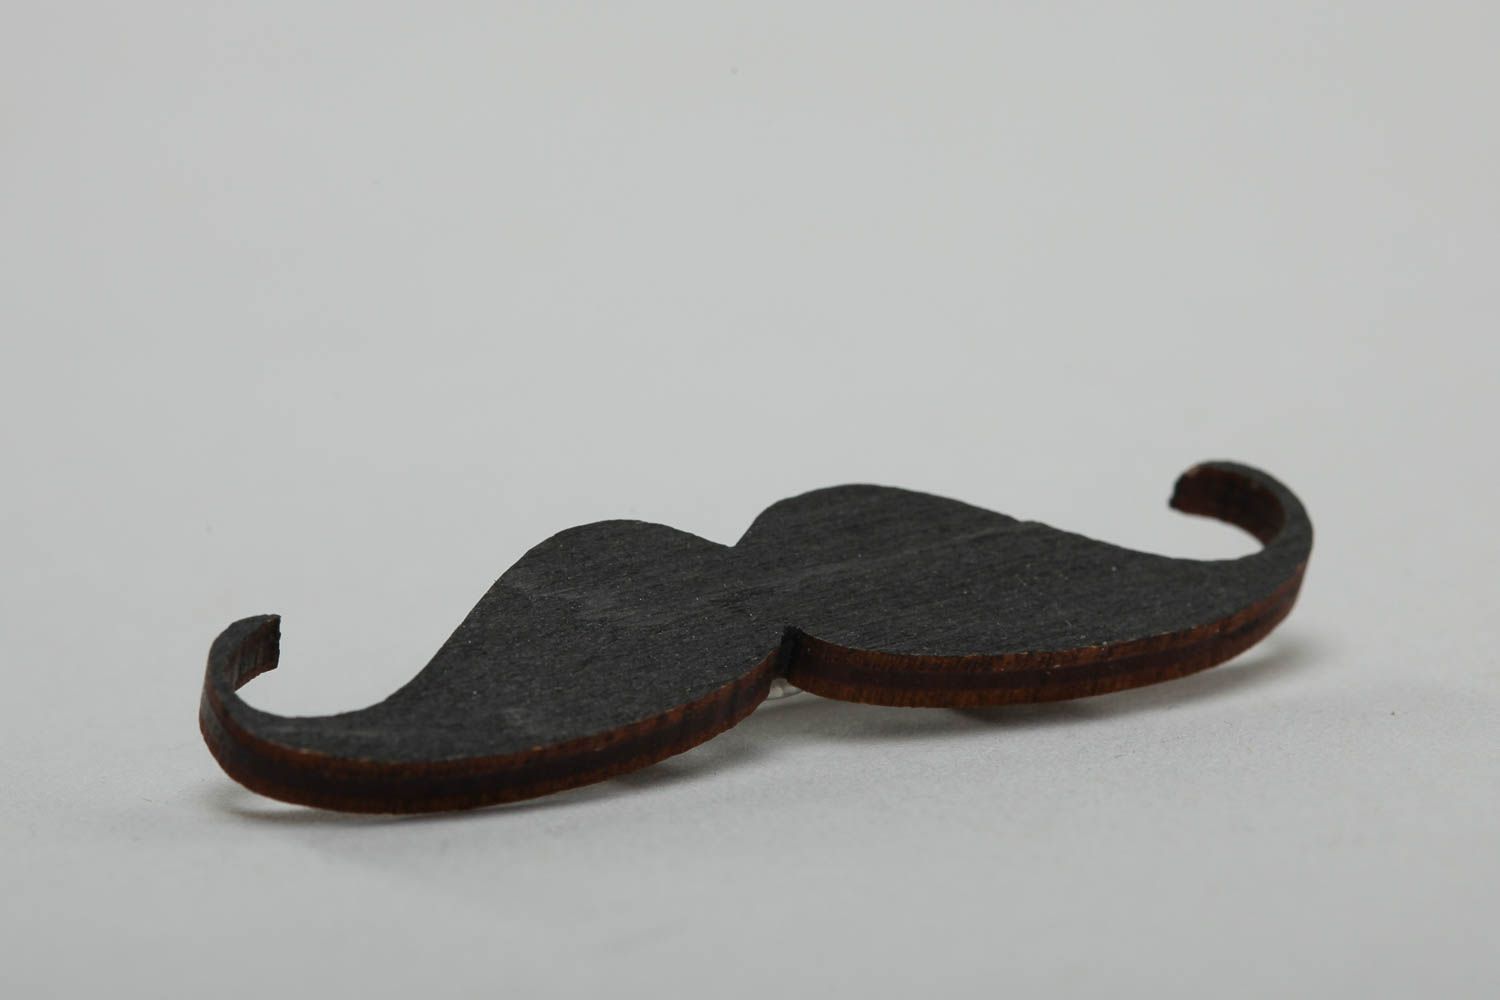 Originelle Schnurrbart Brosche schwarz aus Furnierplatte mit Acrylfarben bemalt foto 3